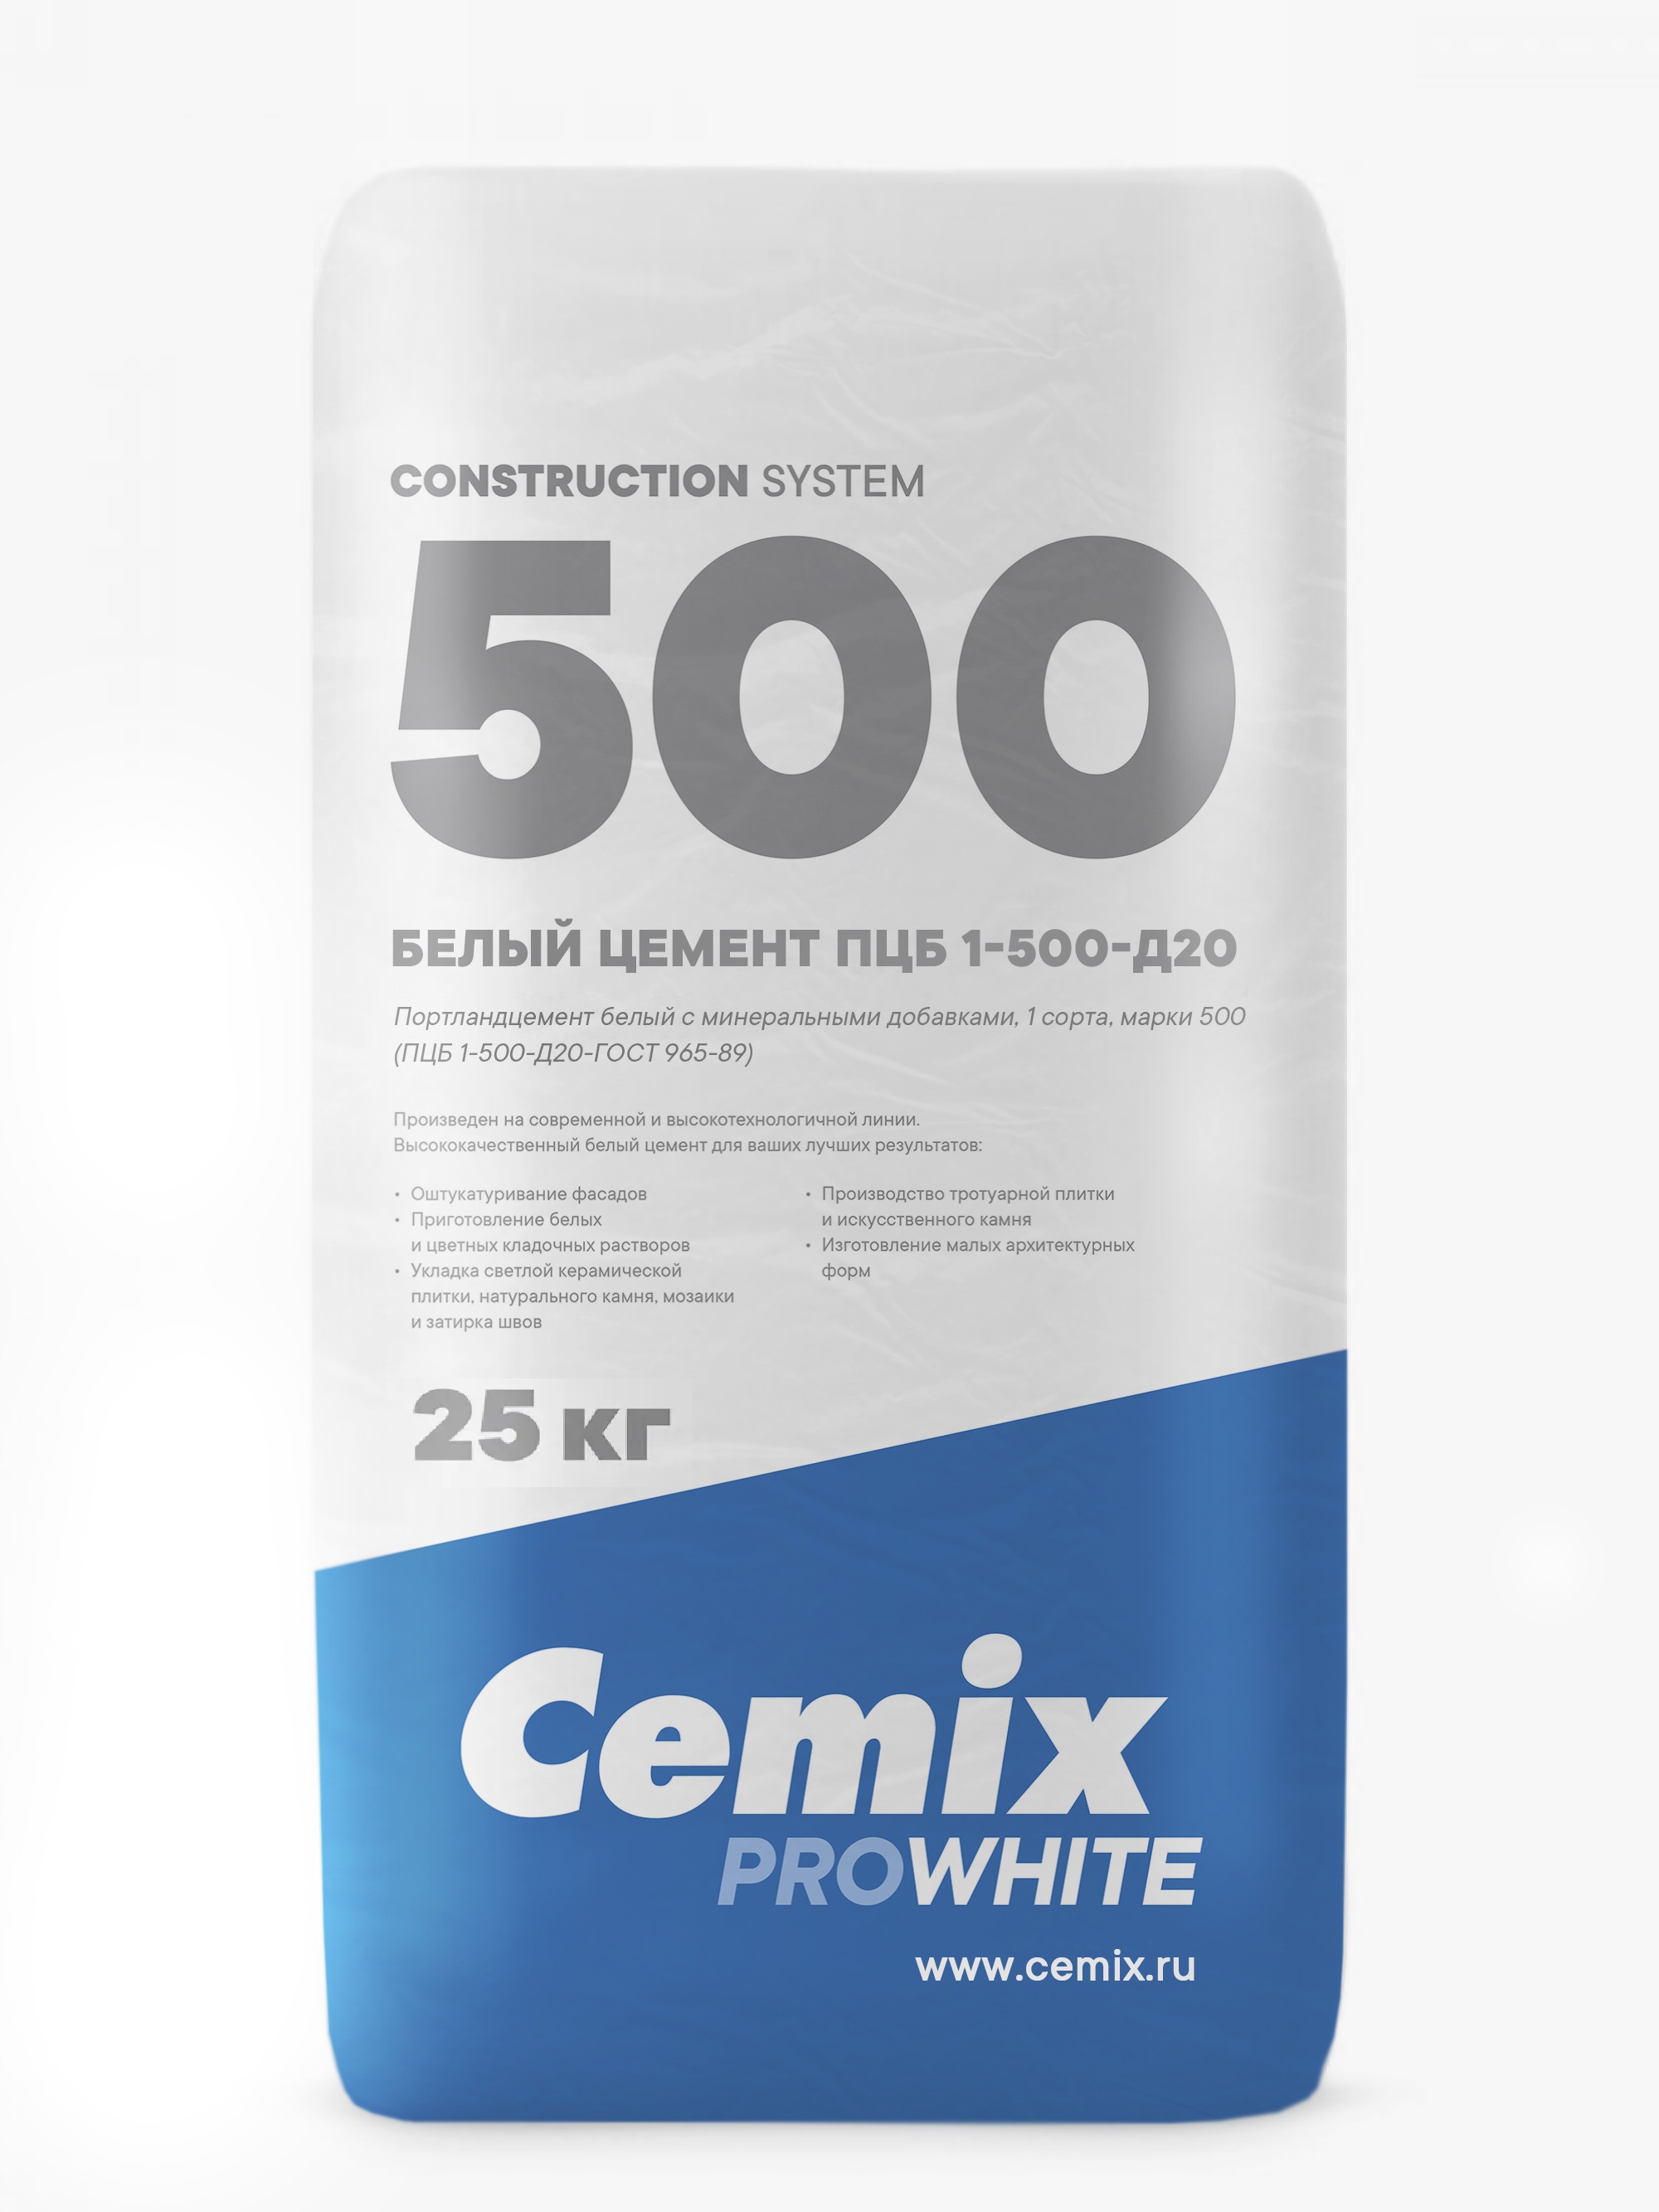 Цемент (Россия, Cemix) ПЦБ 1 - 500 -Д20 мешок 25 кг в слинг-беге (1400кг)